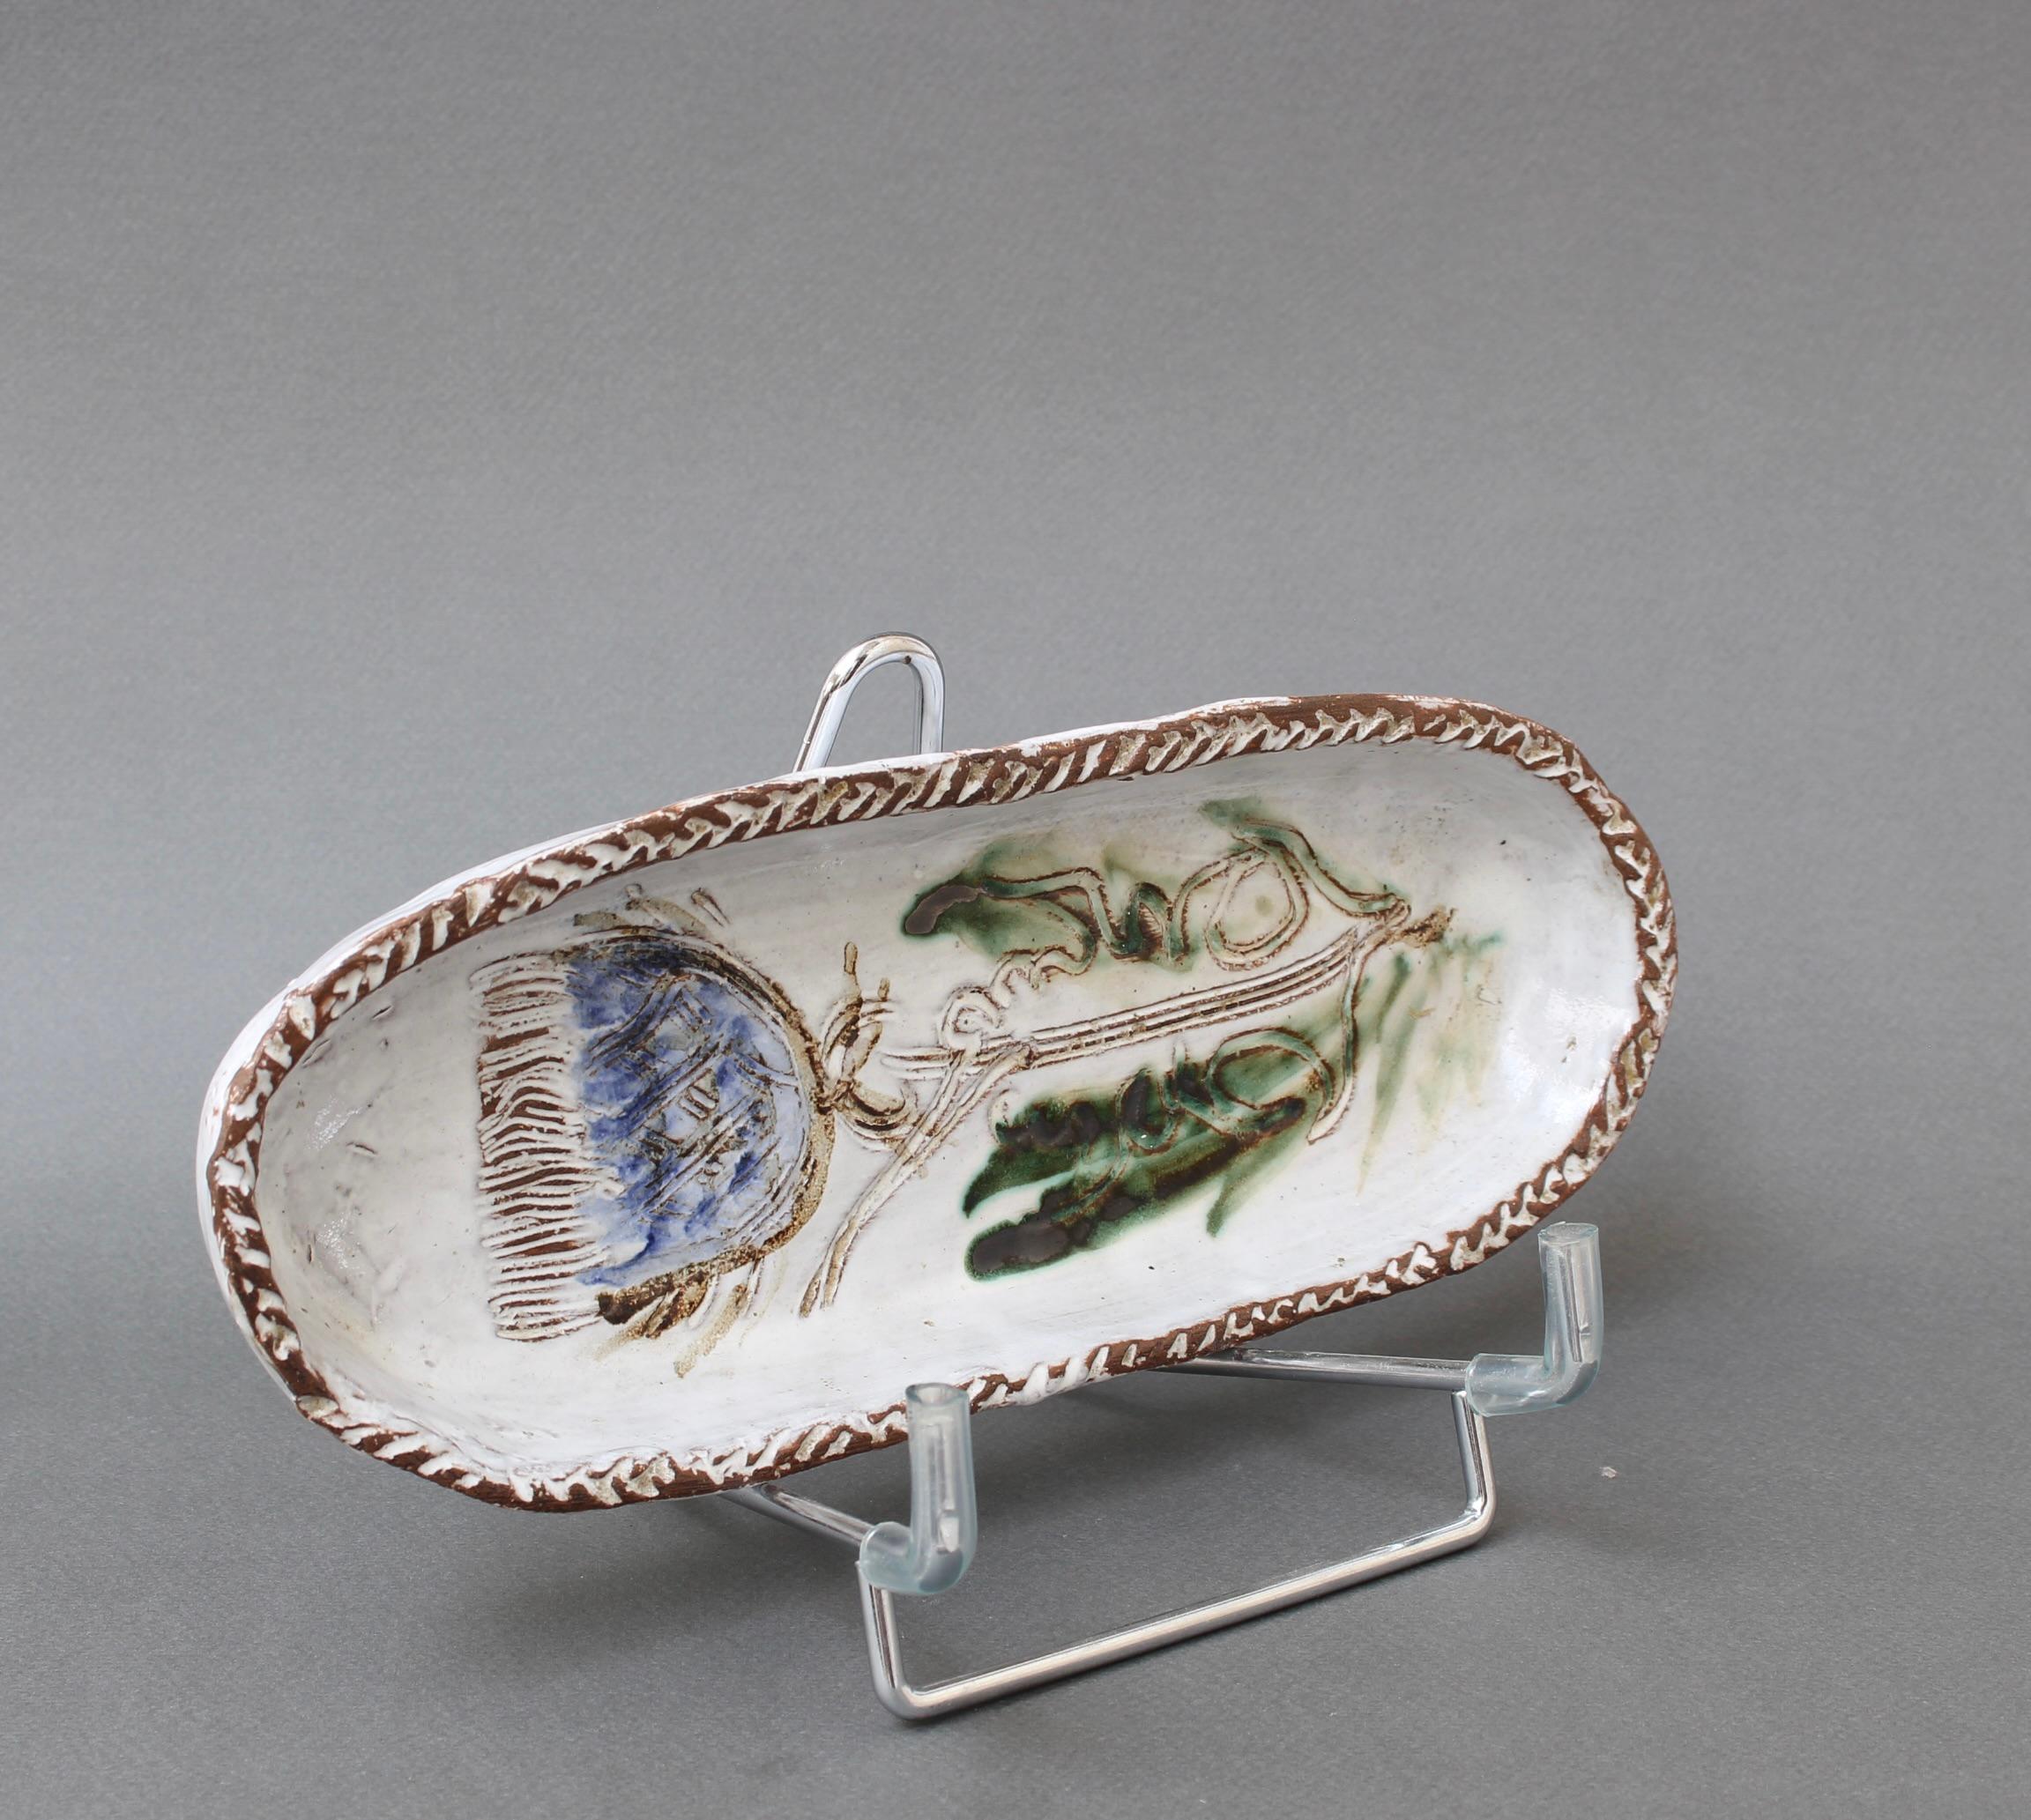 Plat décoratif en céramique française à motif floral (vers les années 1970) par Albert Thiry. Un plat en céramique de forme oblongue présente une surface émaillée blanc craie. Dans le creux du plat, une fleur de chardon est incisée dans la glaçure